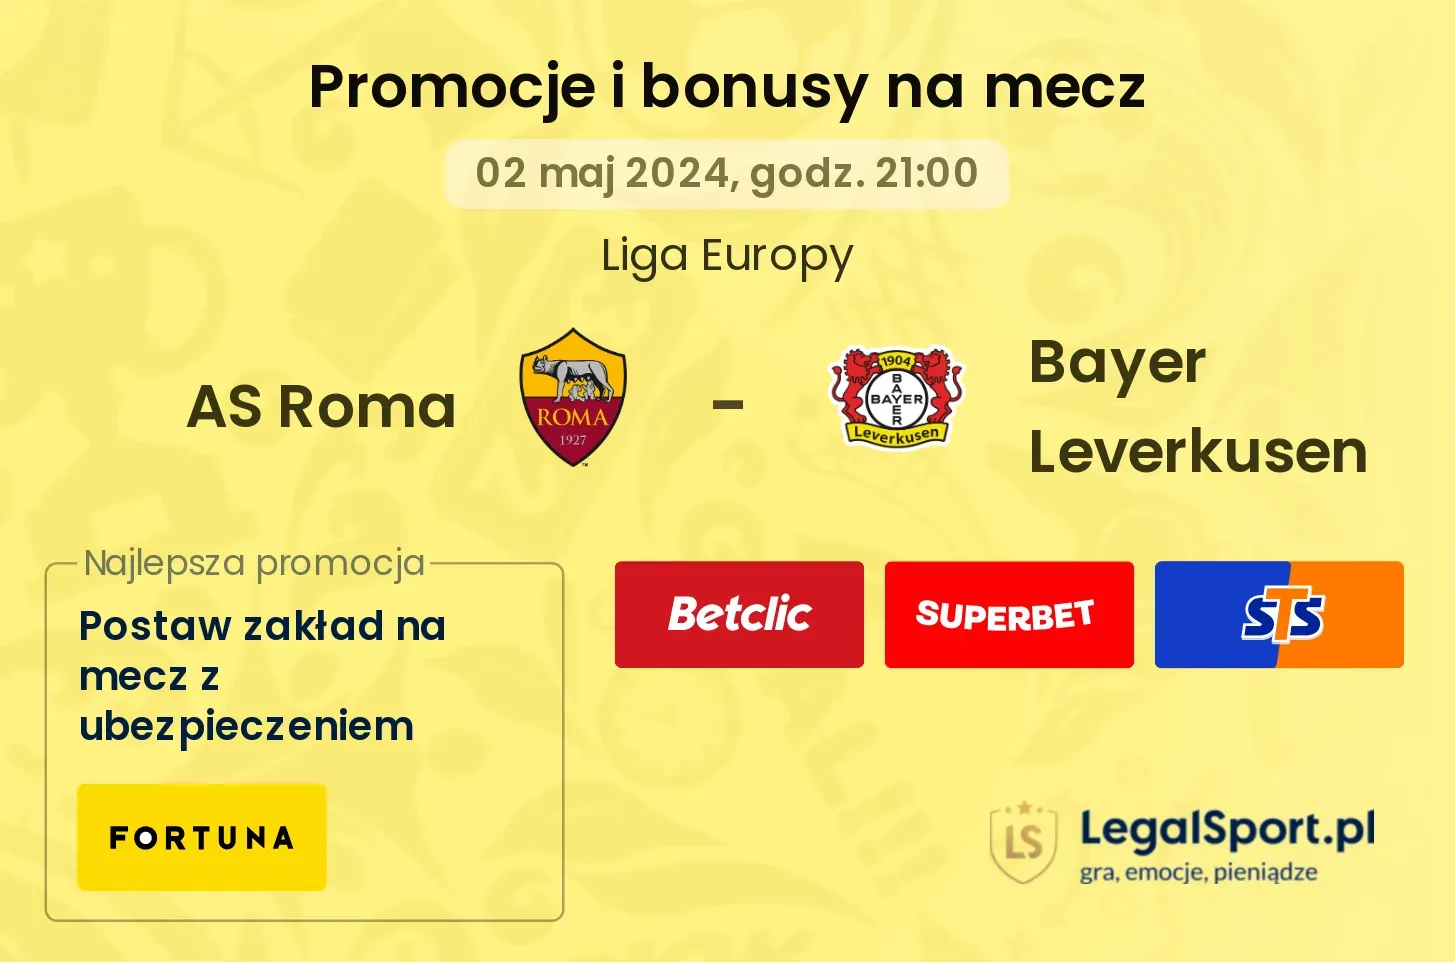 AS Roma - Bayer Leverkusen promocje bonusy na mecz